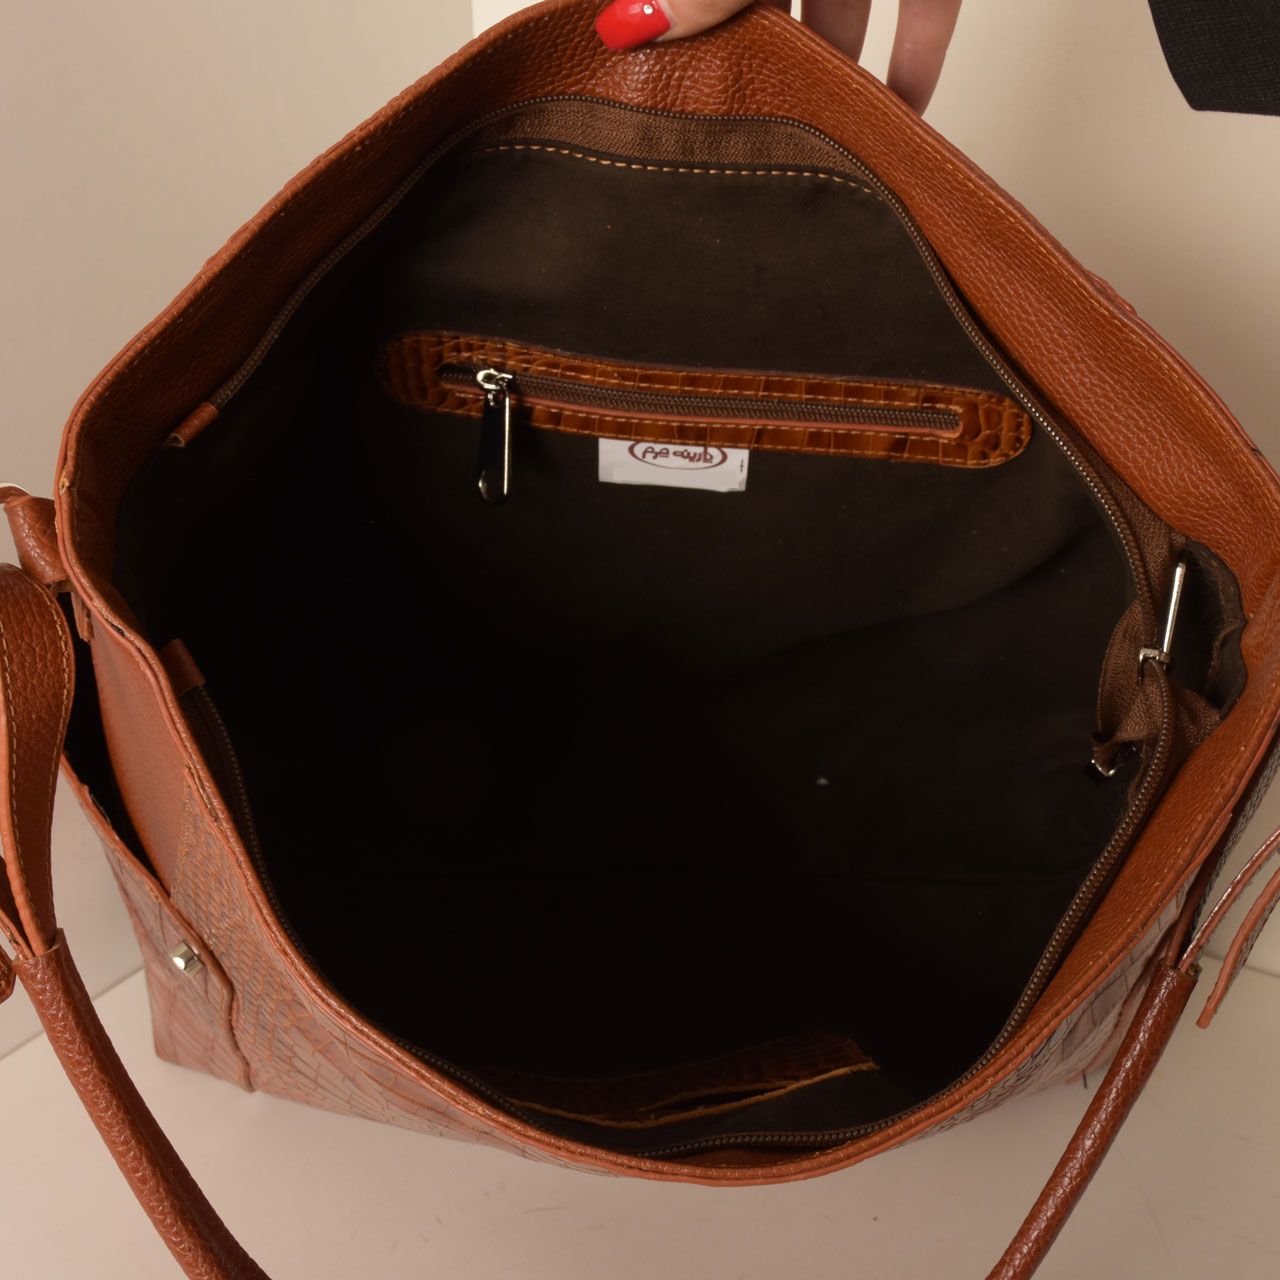  کیف دوشی زنانه پارینه چرم مدل V206-1 -  - 6